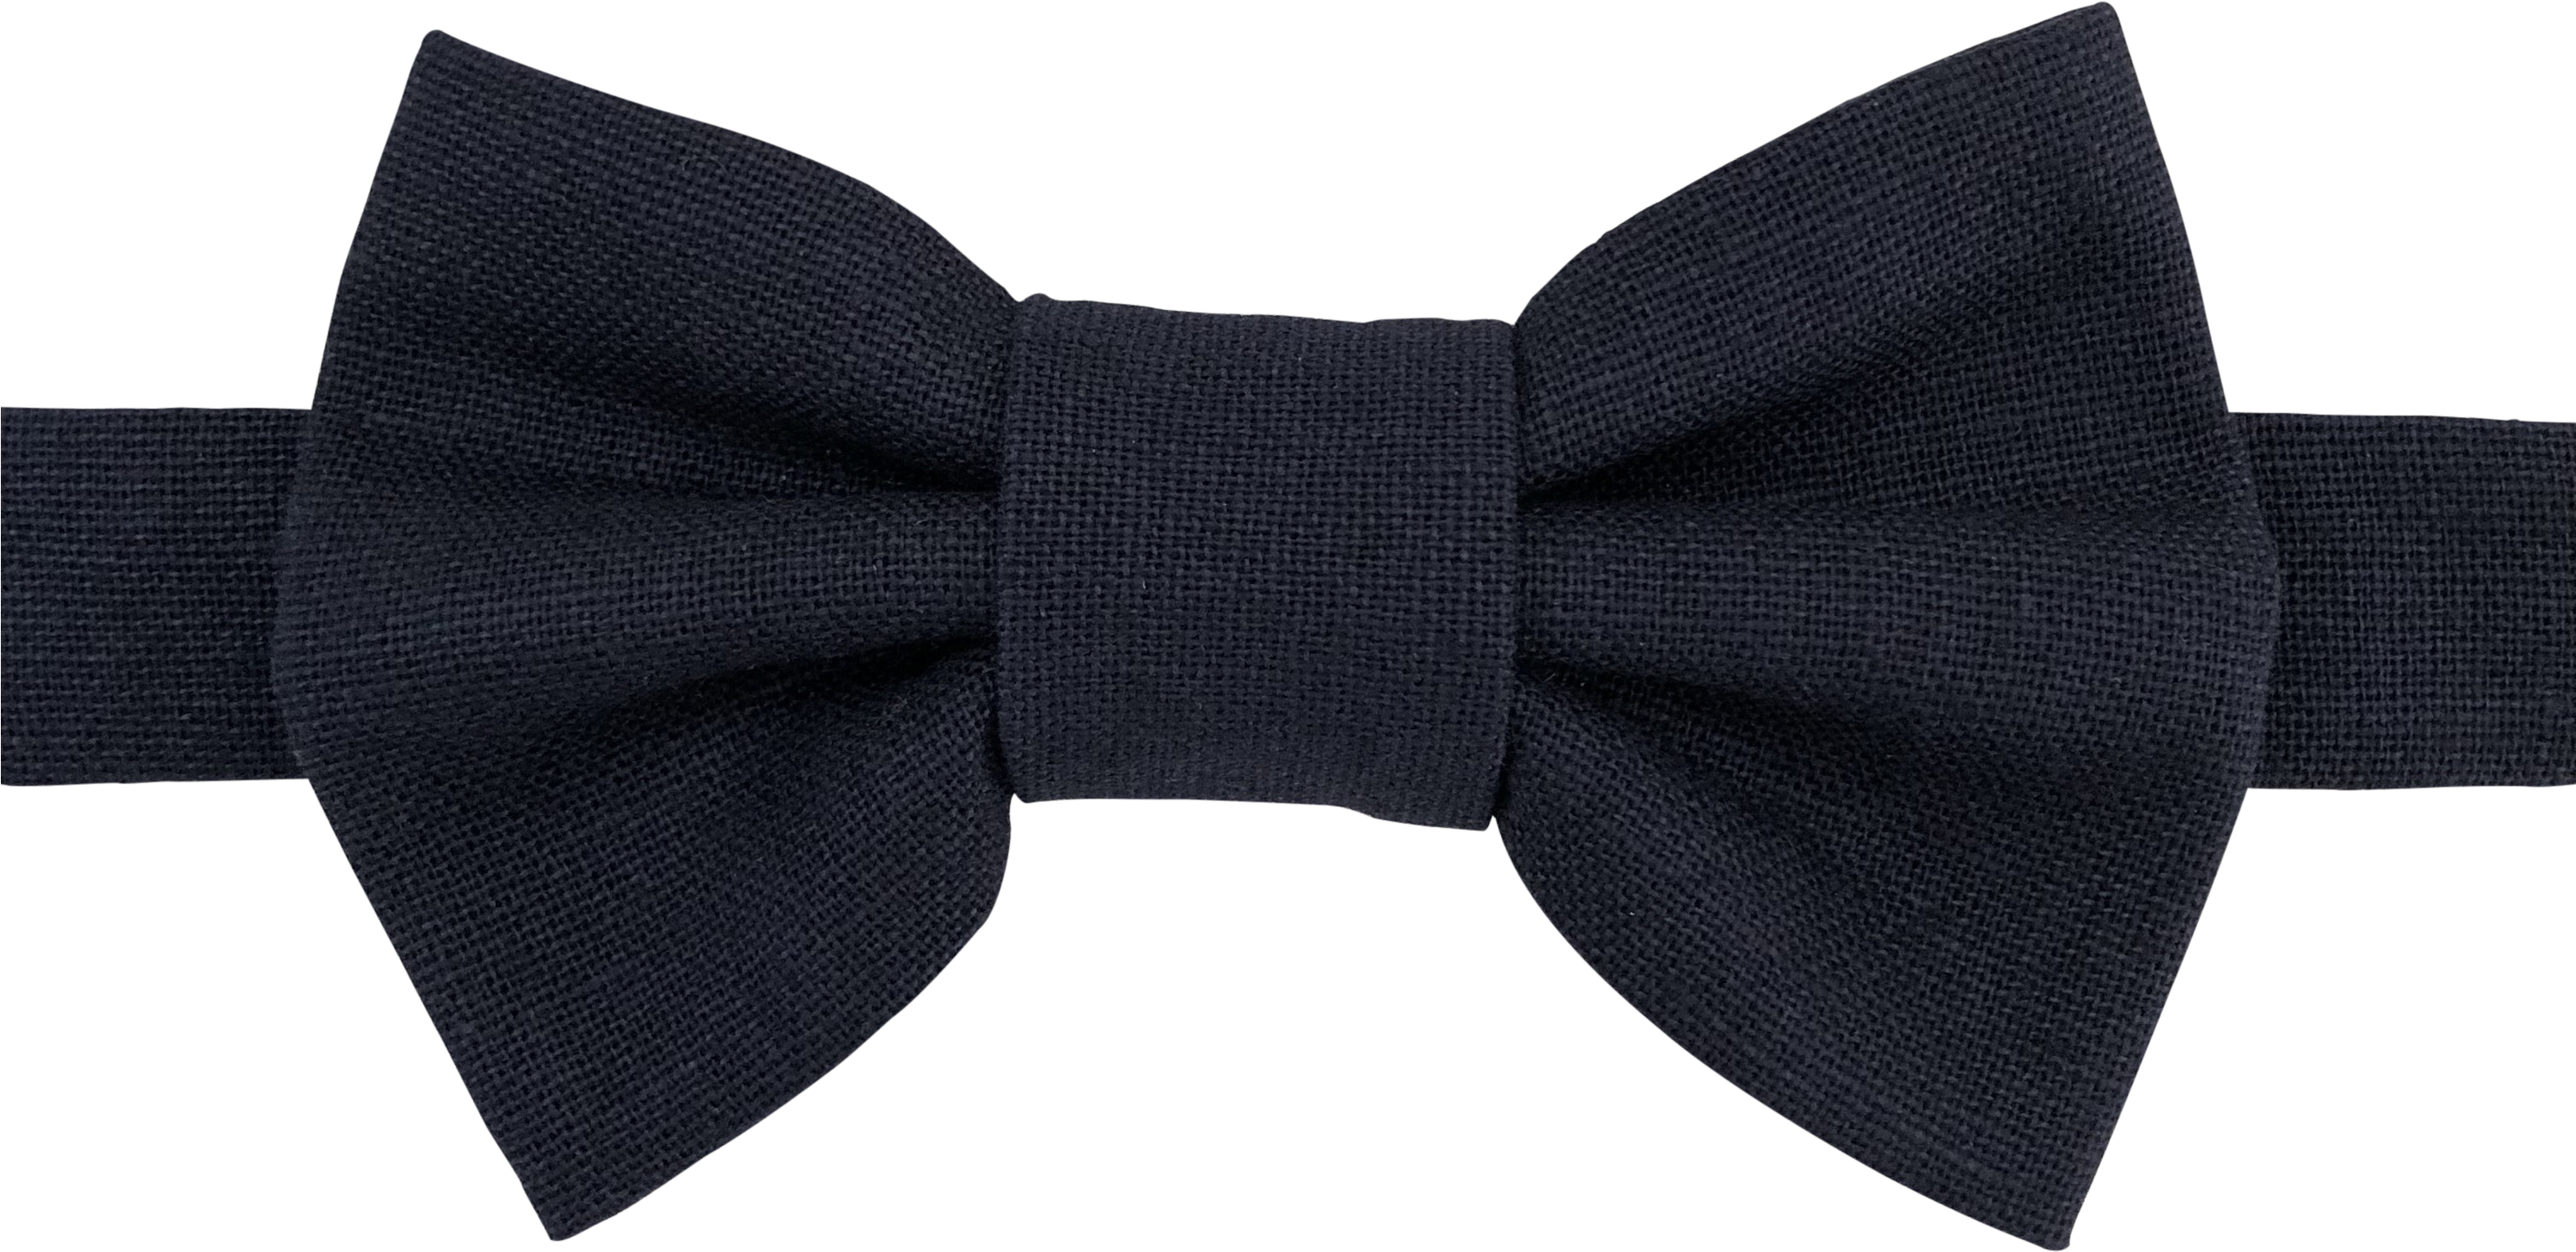 Image Of Navy Linen Bow Tie - Necktie (3024x3024), Png Download